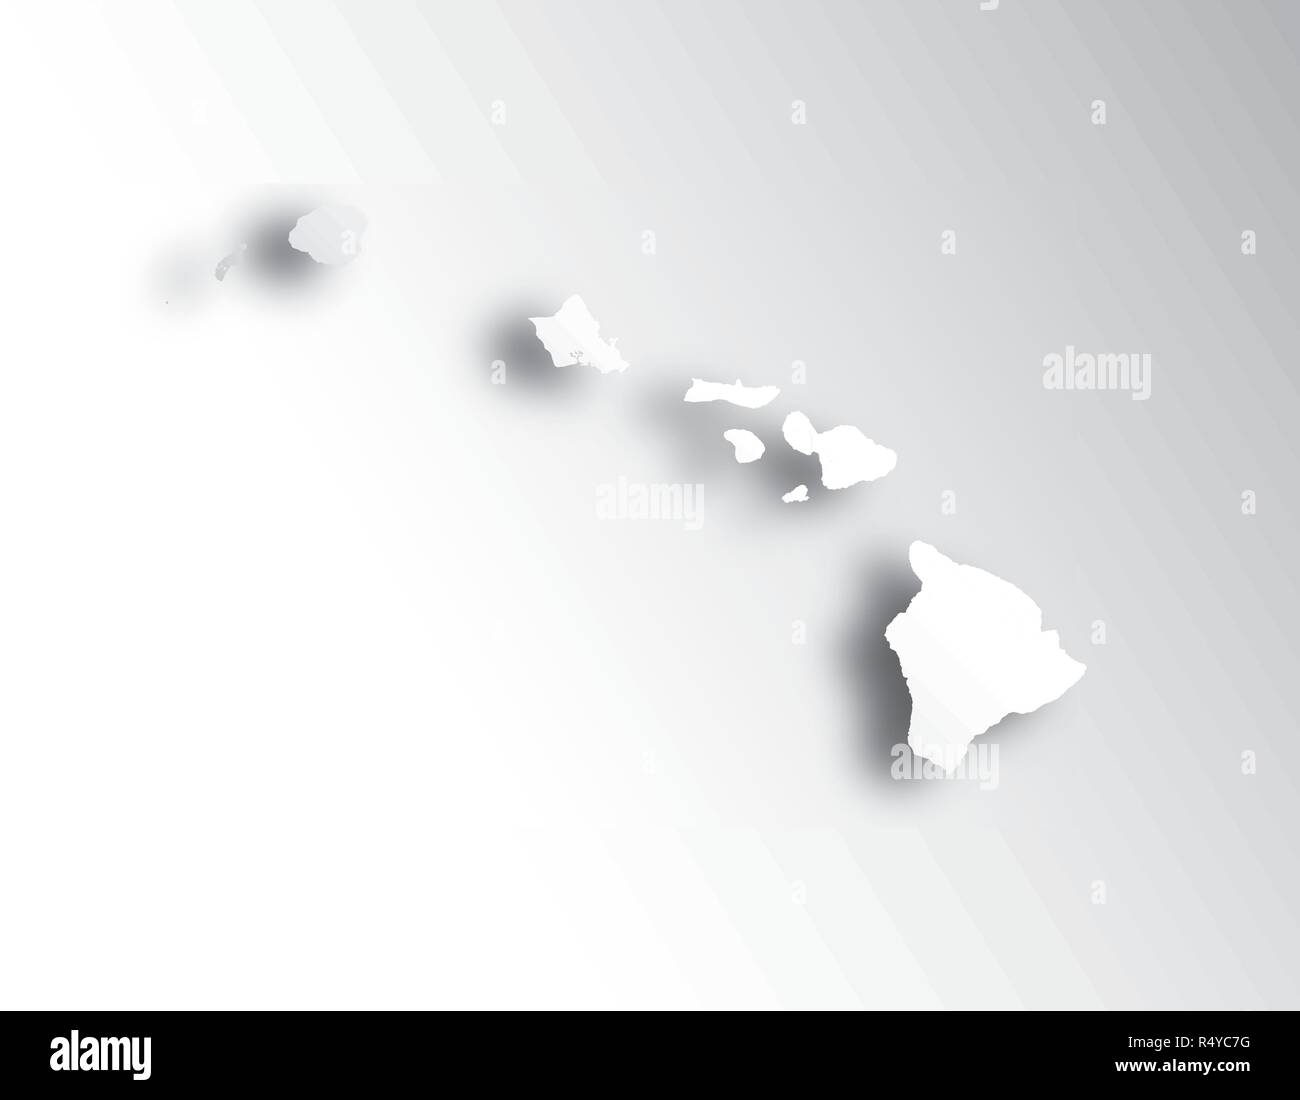 Les états américains - carte d'Hawaii avec effet coupe papier. Fait main. Les rivières et lacs sont indiqués. Merci de regarder mes autres images de la série cartographique - ils Illustration de Vecteur